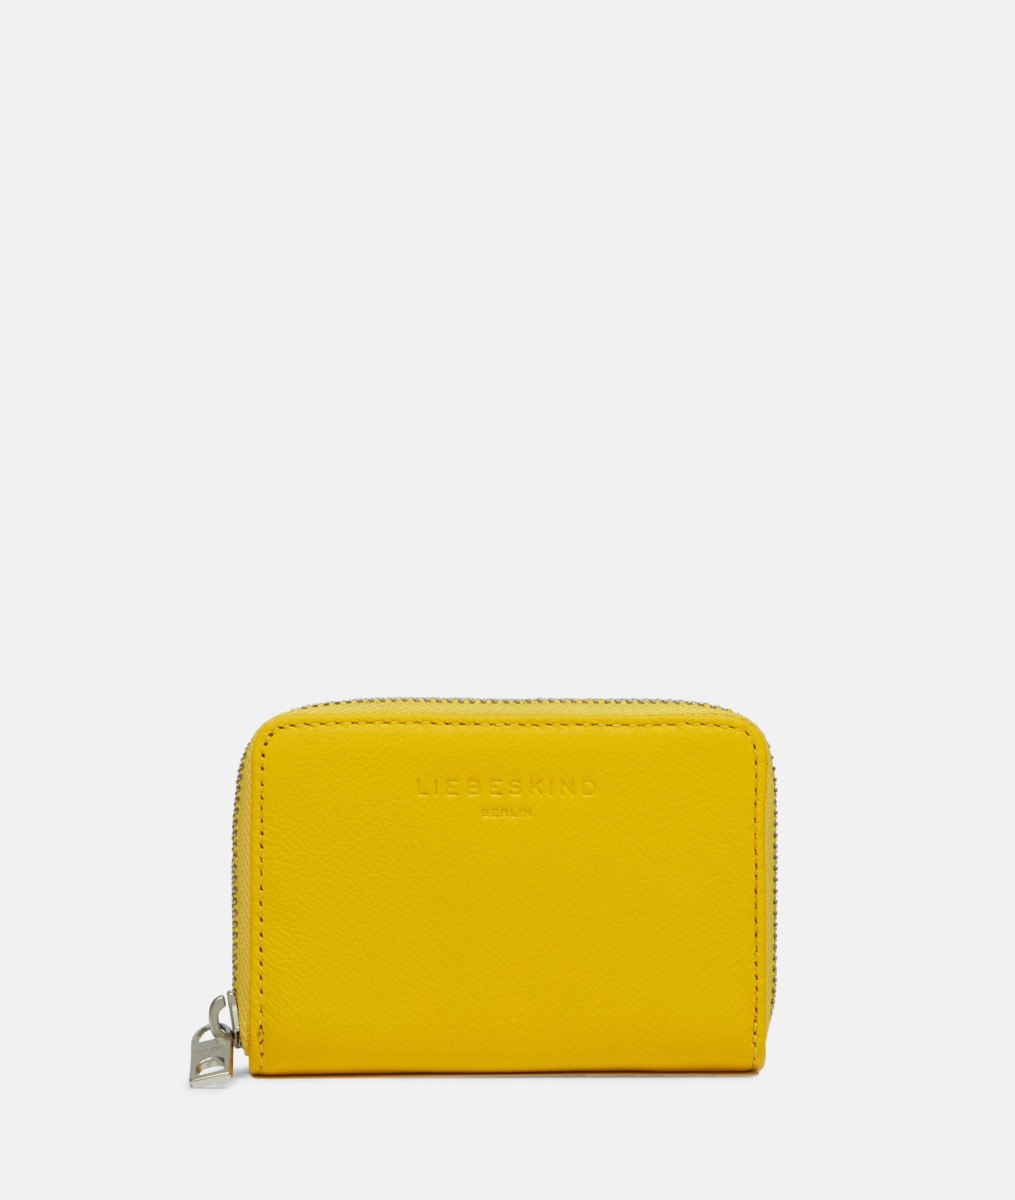 Liebeskind Women's Wallet in Yellow GOOFASH